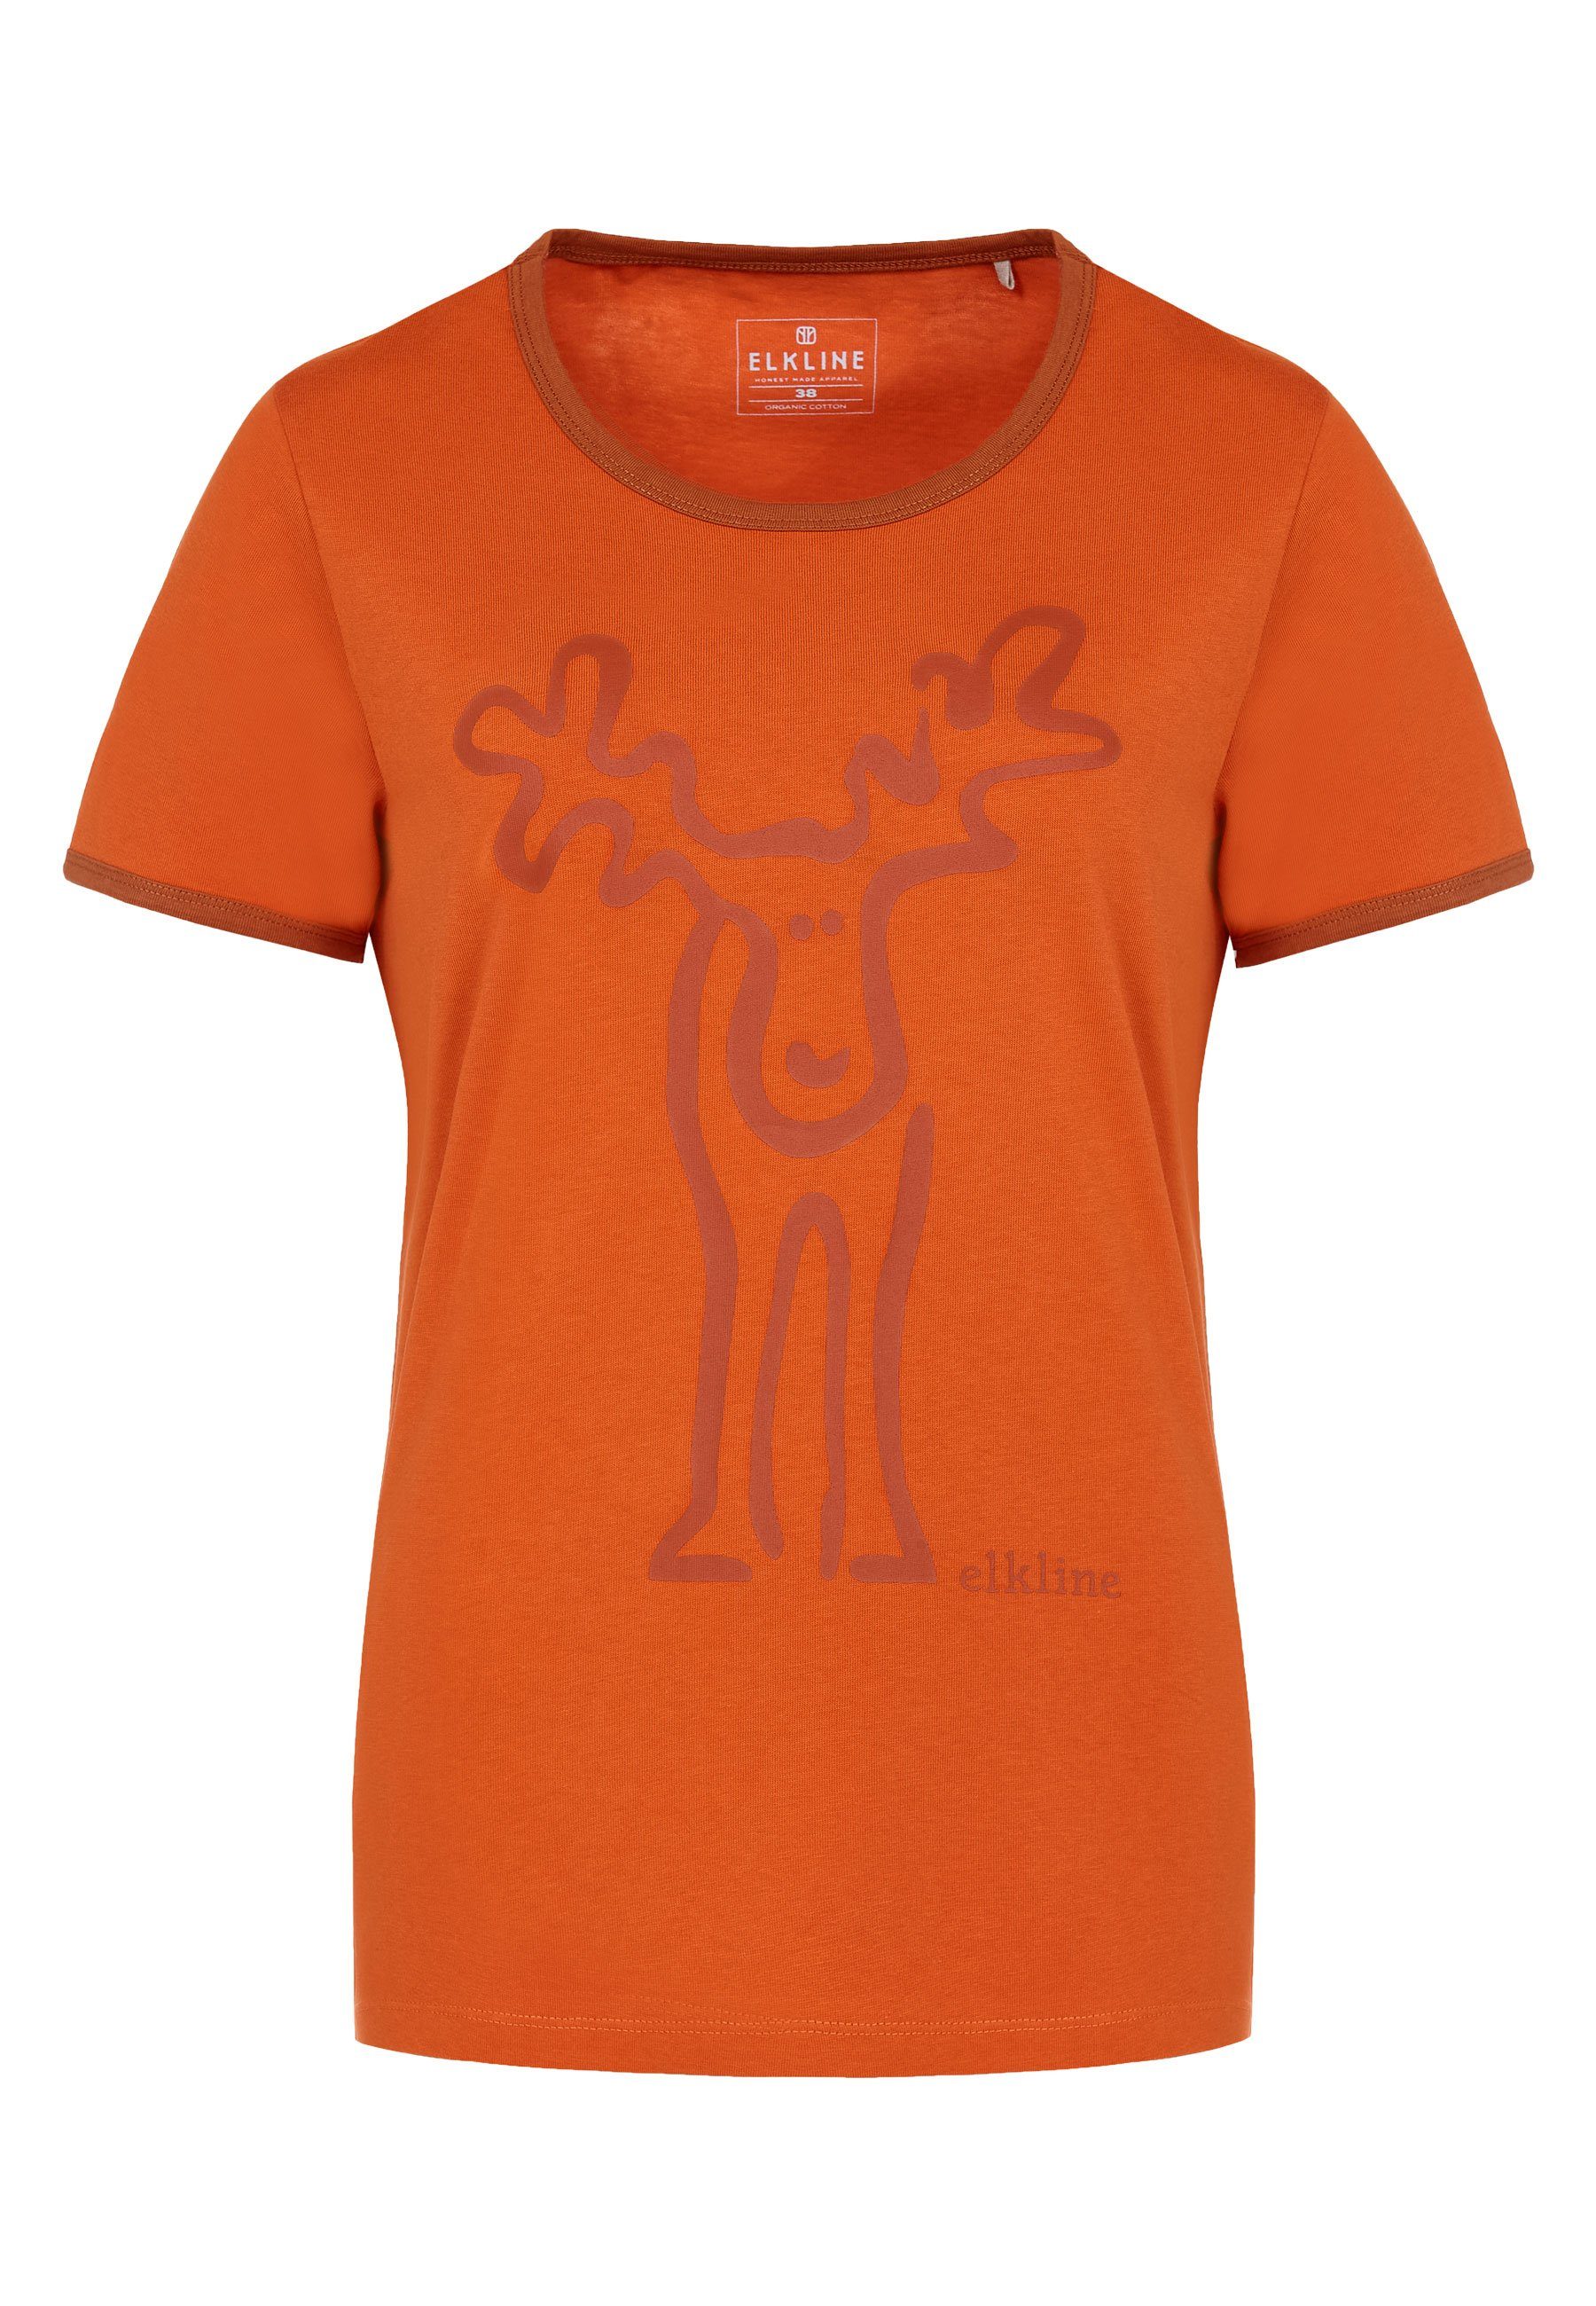 Elkline T-Shirt Rudolfine Retro Elch Brust und Rücken Print darkorange - rust orange